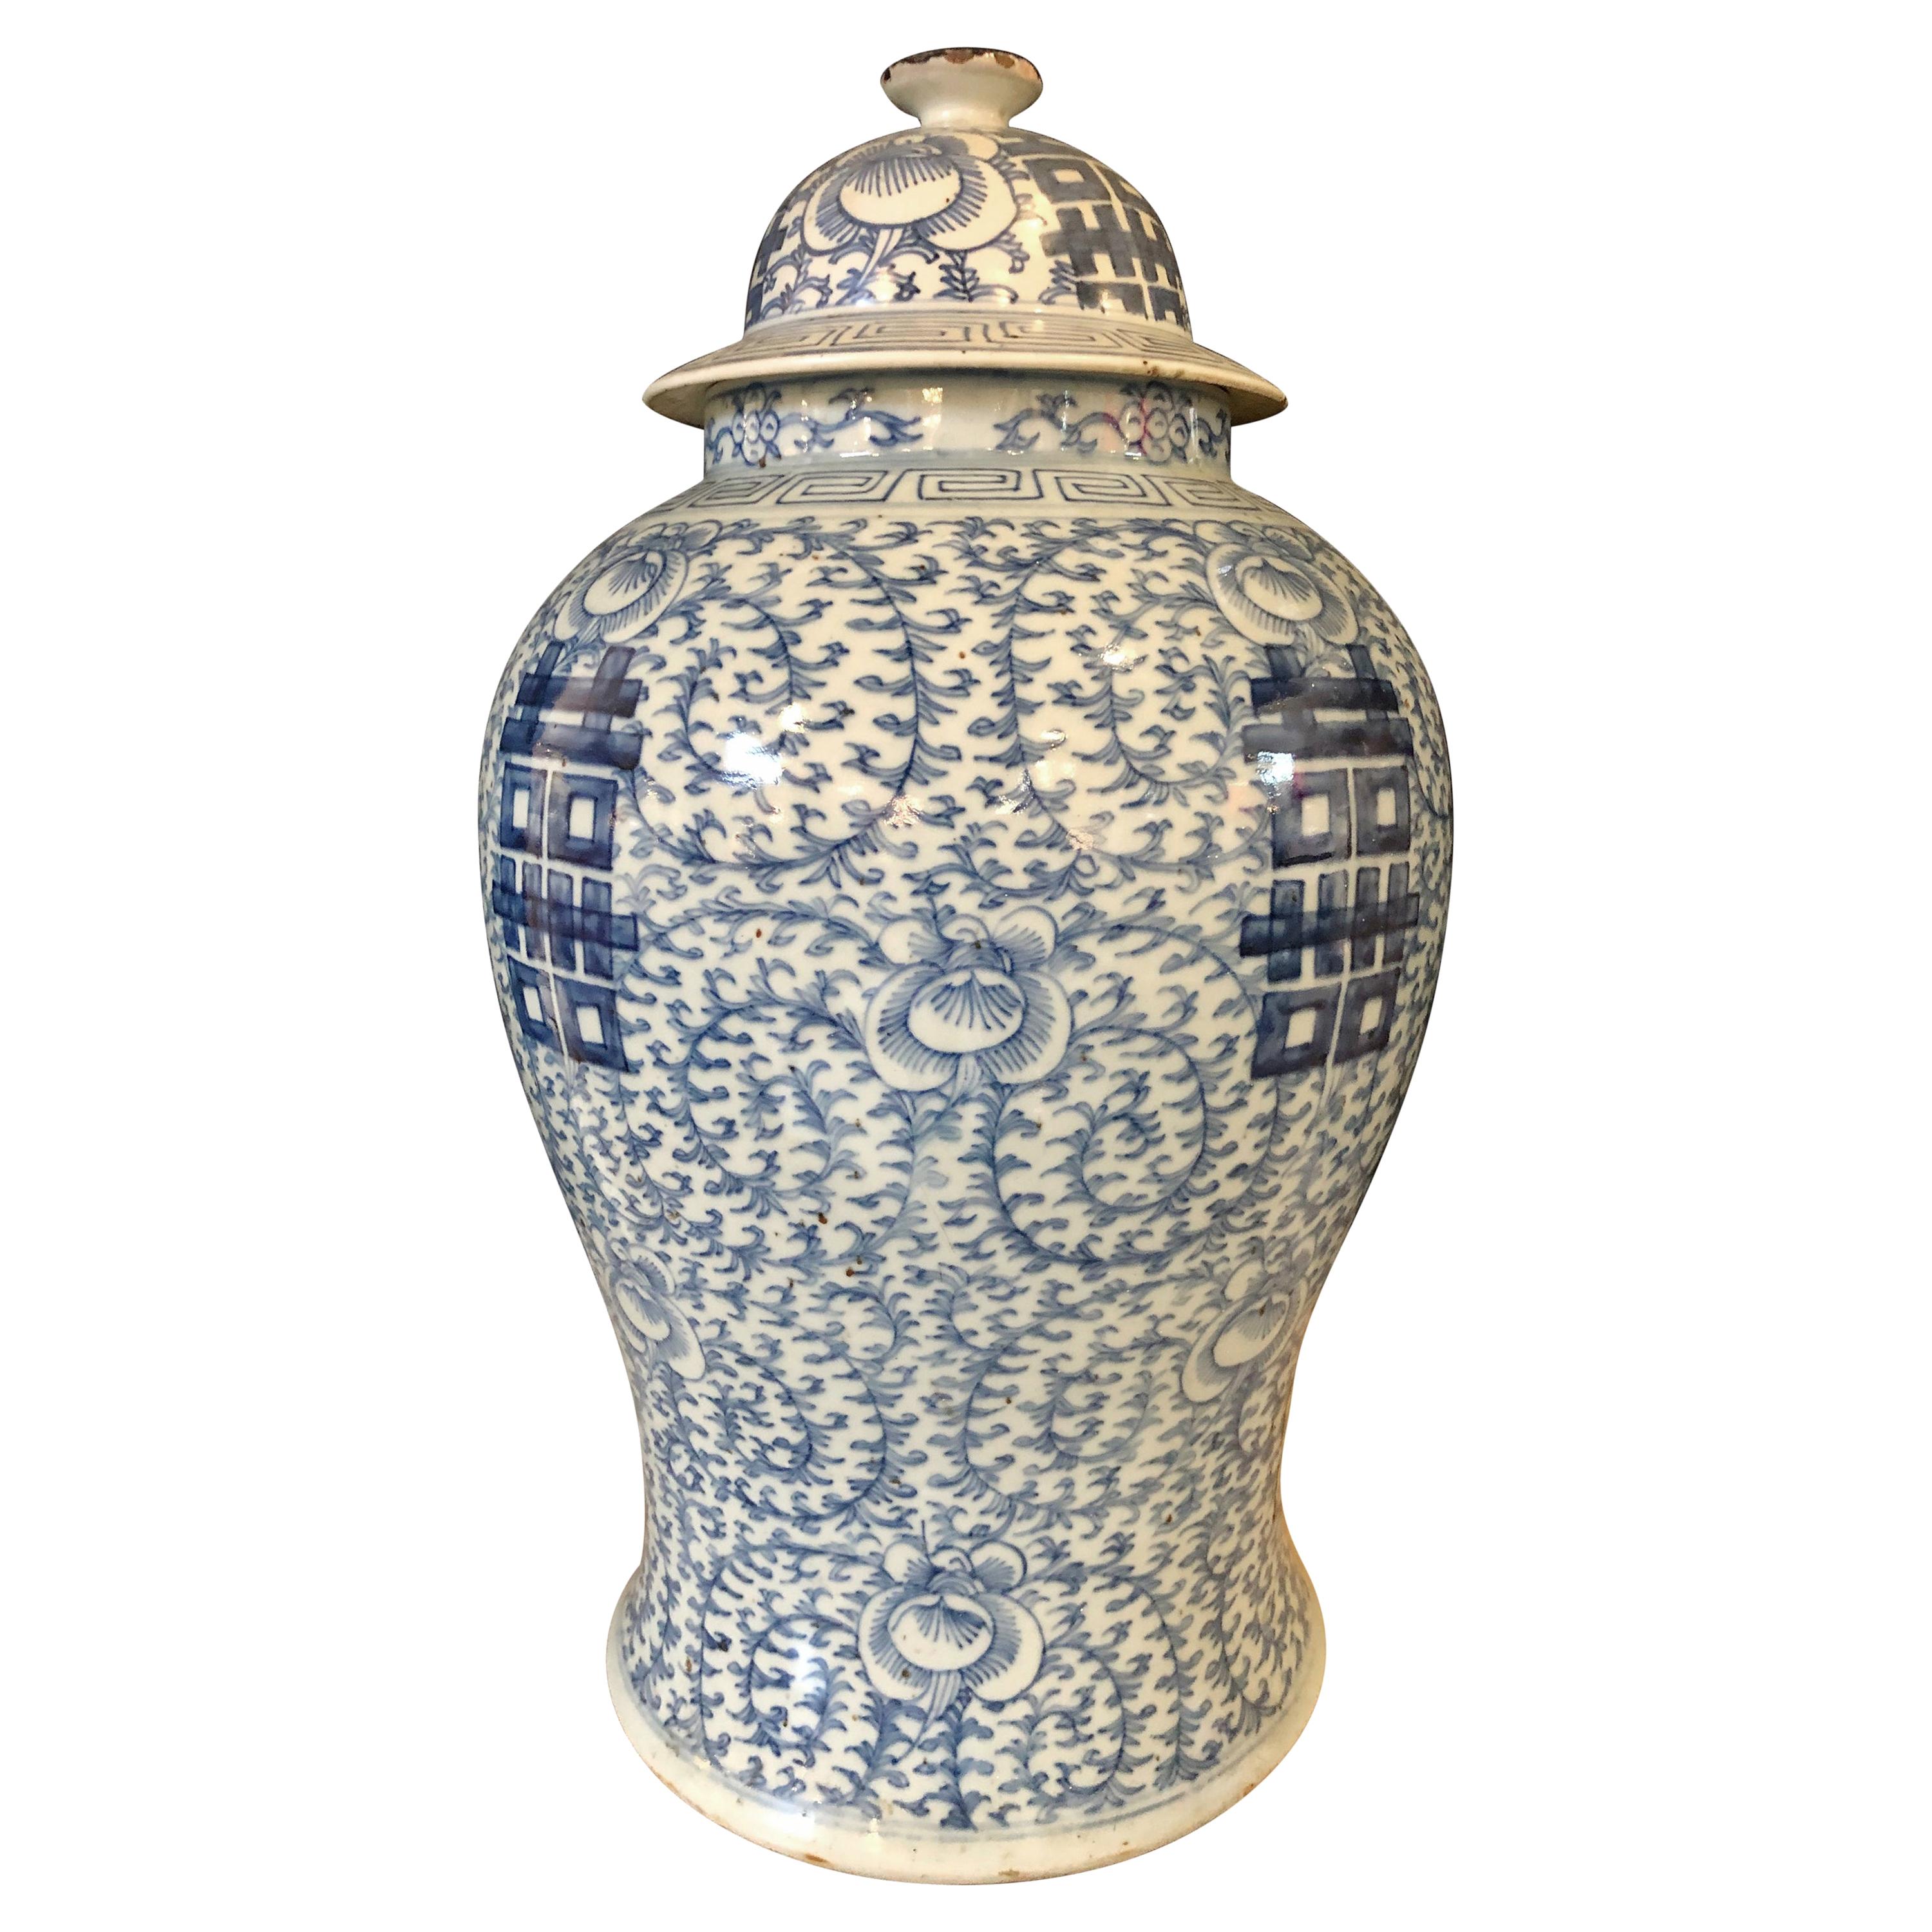 Chinesisches Ingwerglas mit Deckel in Blau und Weiß, Vase oder Urne, signiert auf der Unterseite